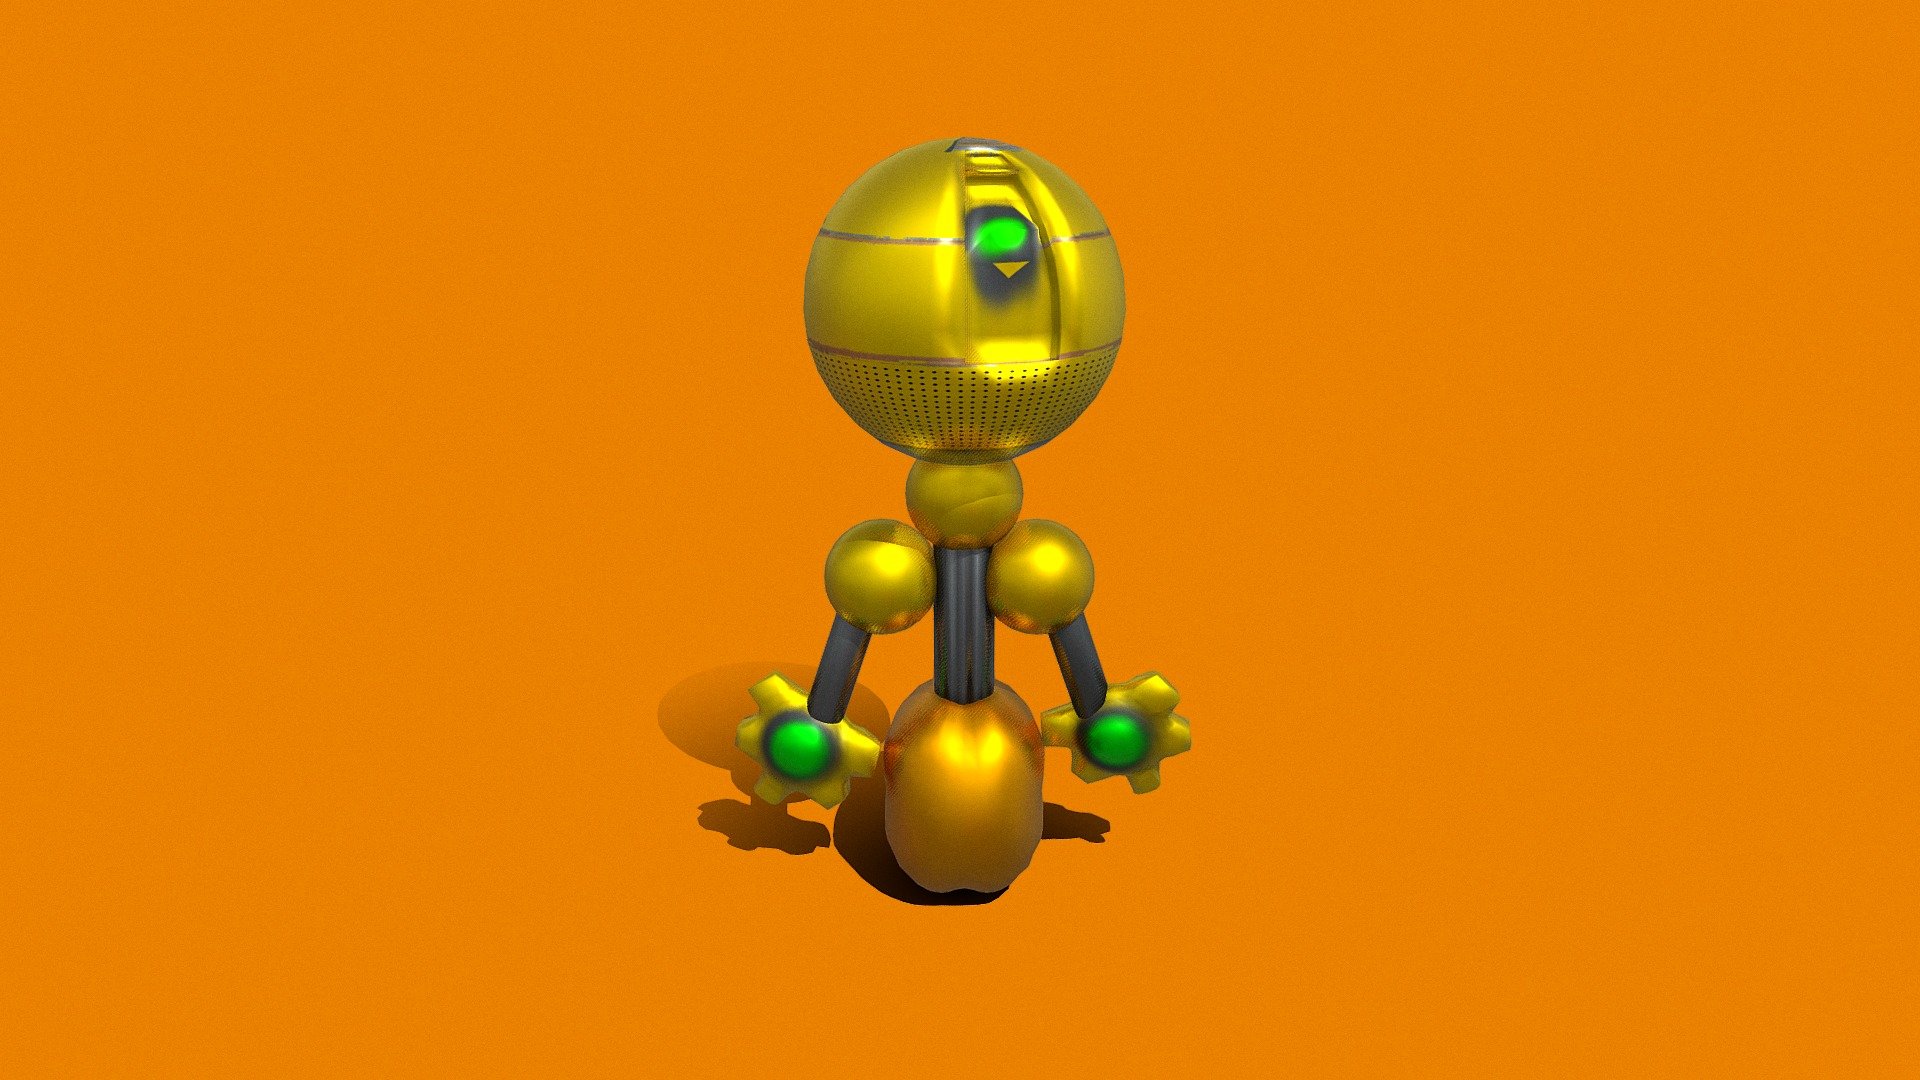 ROBOT43 - Download Free 3D model by djilali1 (@NEYON) [9e7b86d] - Sketchfab